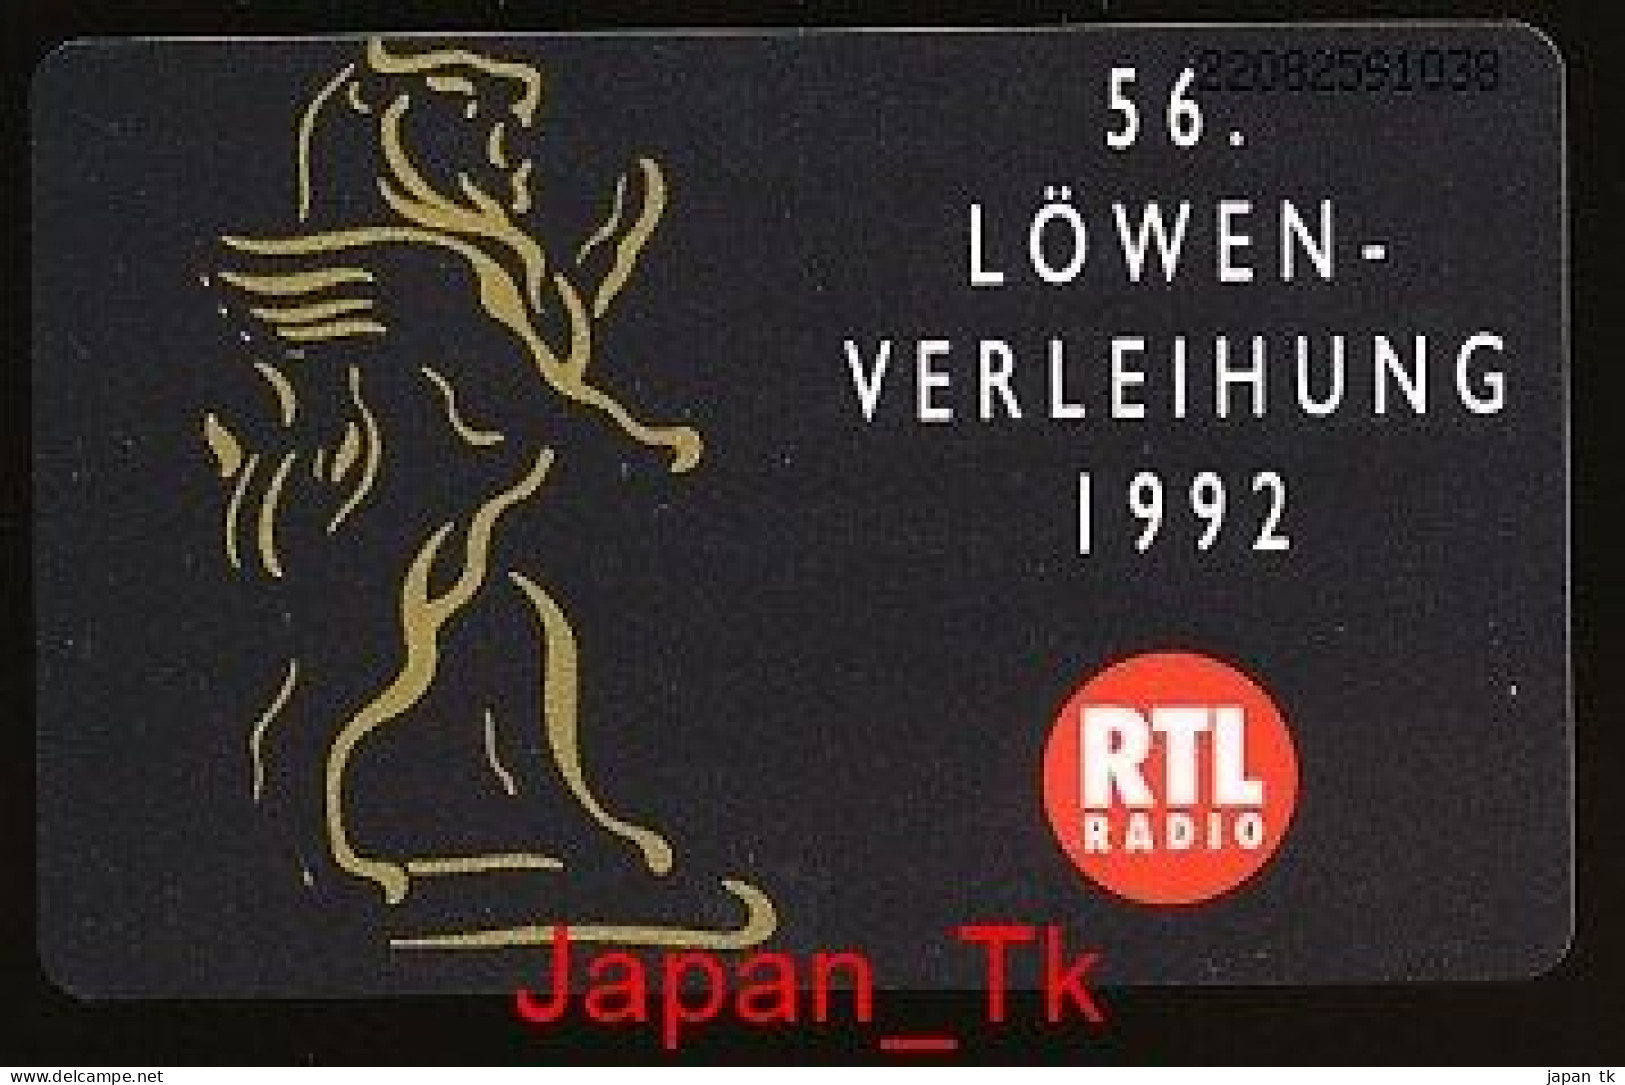 GERMANY K 192  92  RTL Radio - Aufl  3 000 - Siehe Scan - K-Series : Série Clients